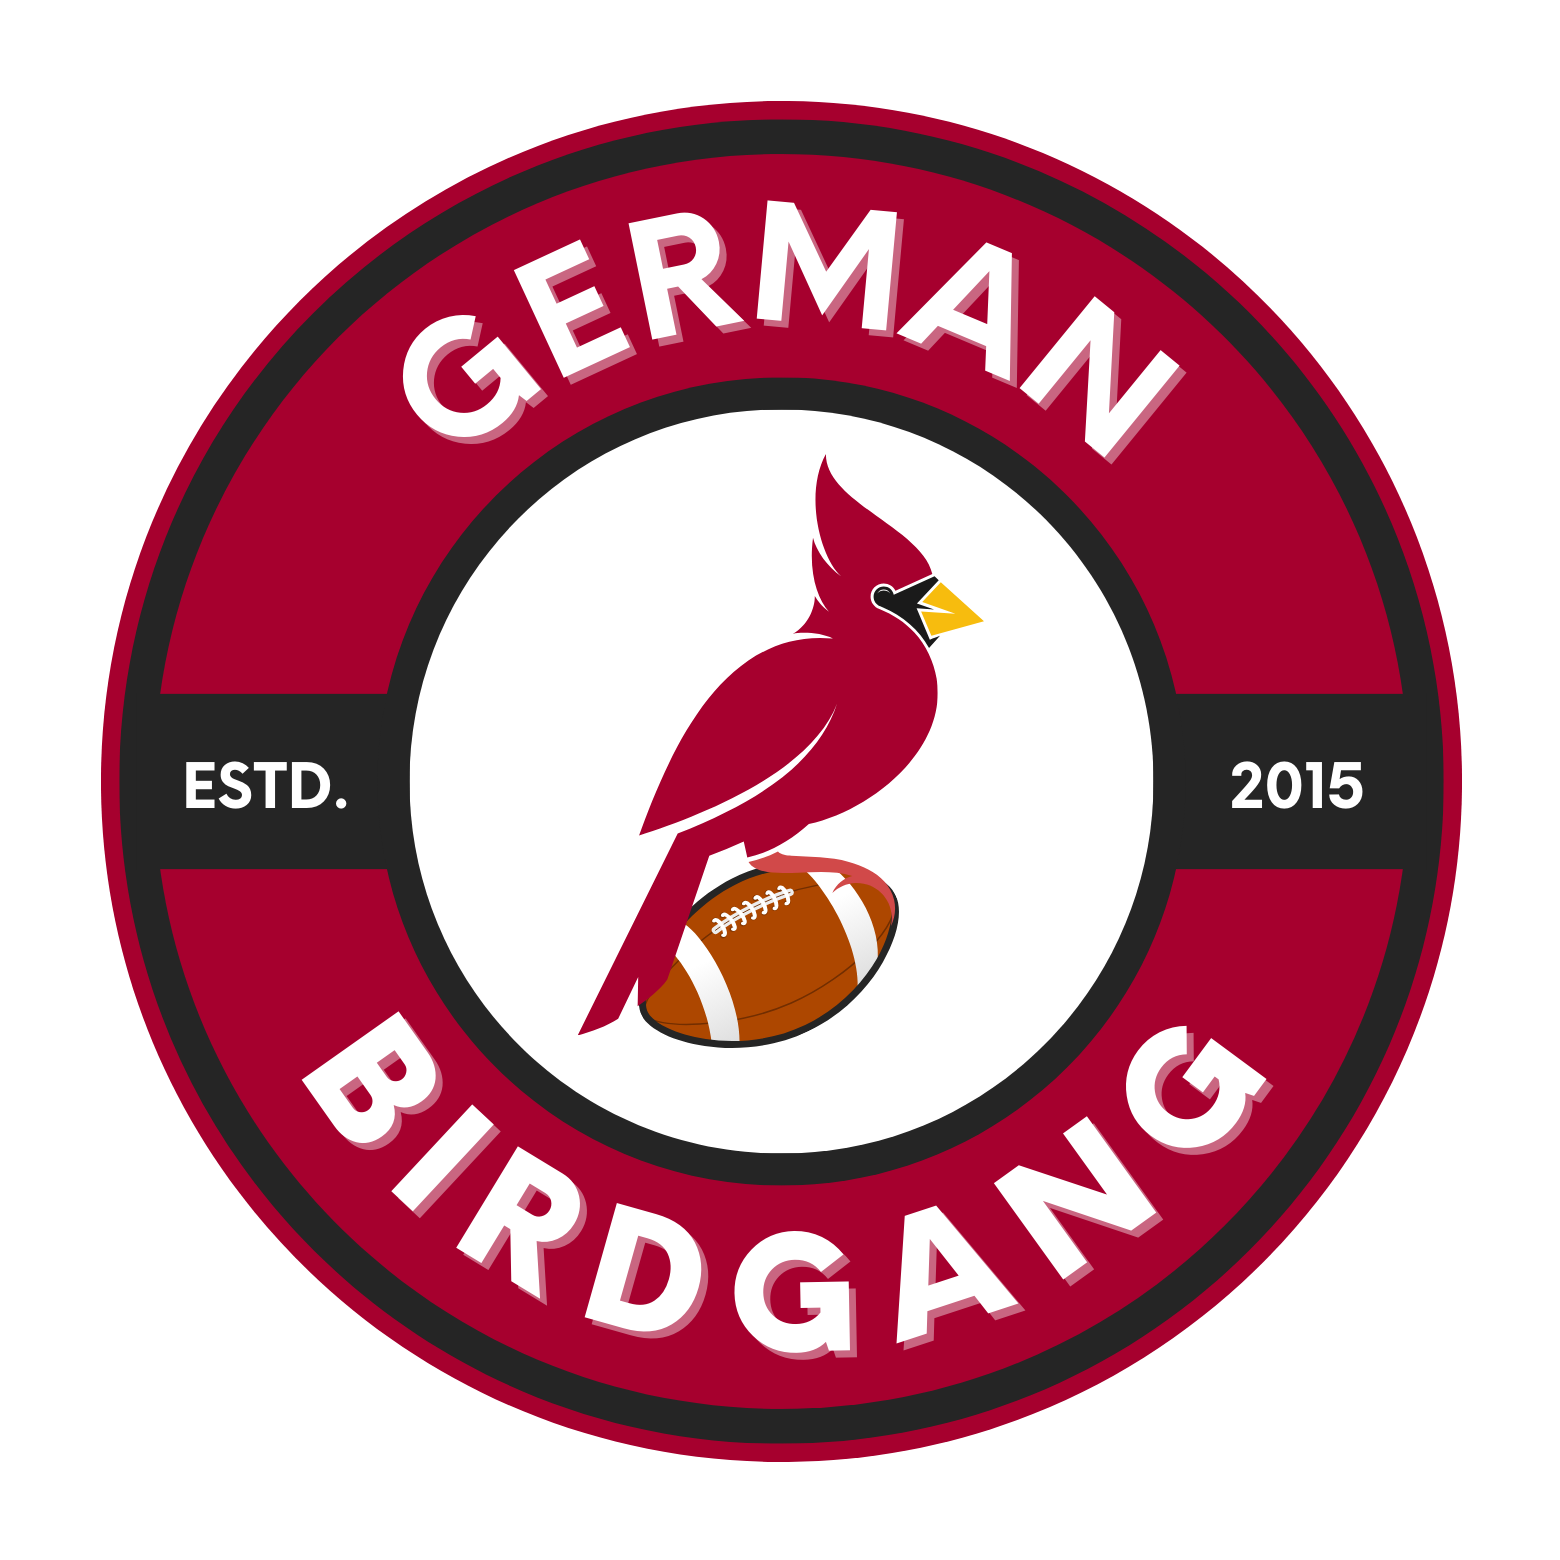 German Birdgang